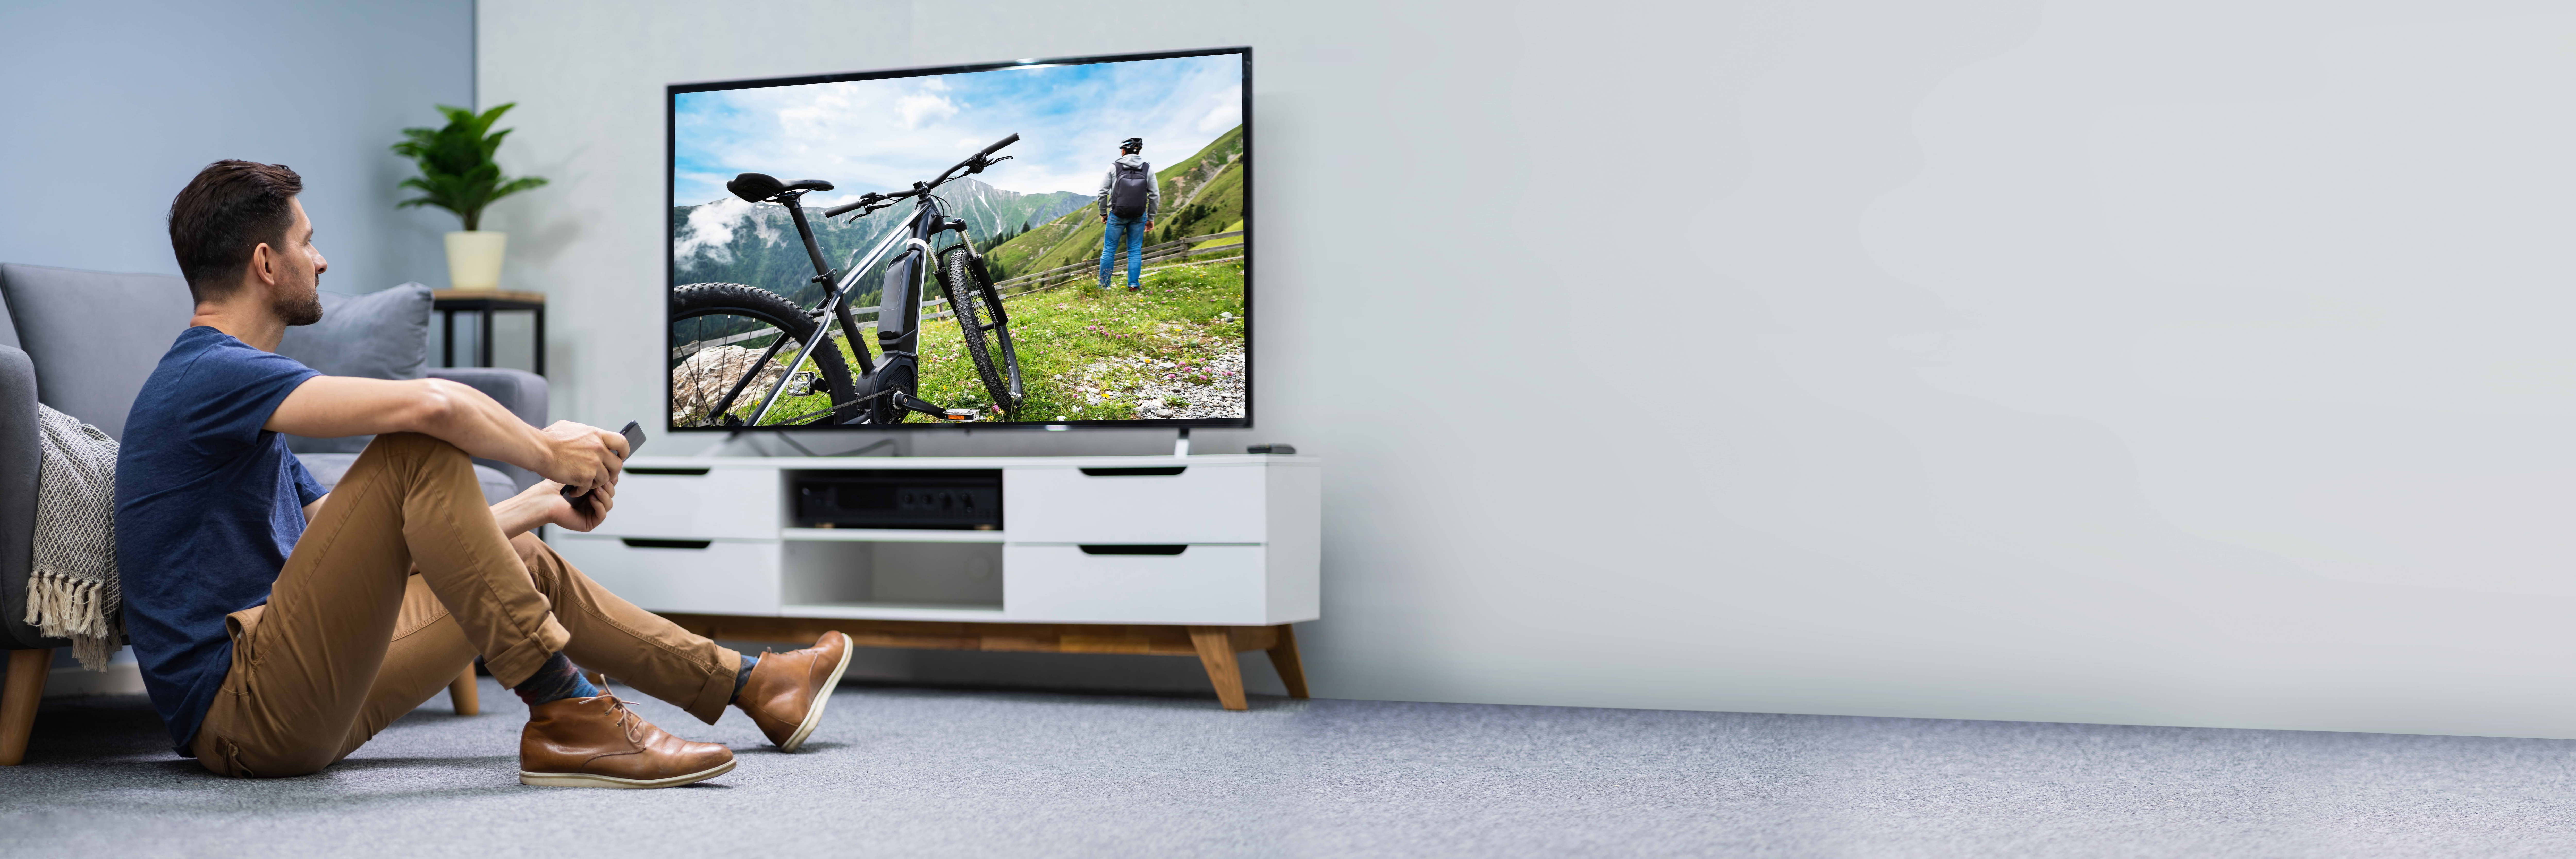 כיצד לבחור את גודל מסך הטלוויזיה המתאים לחדר שלך